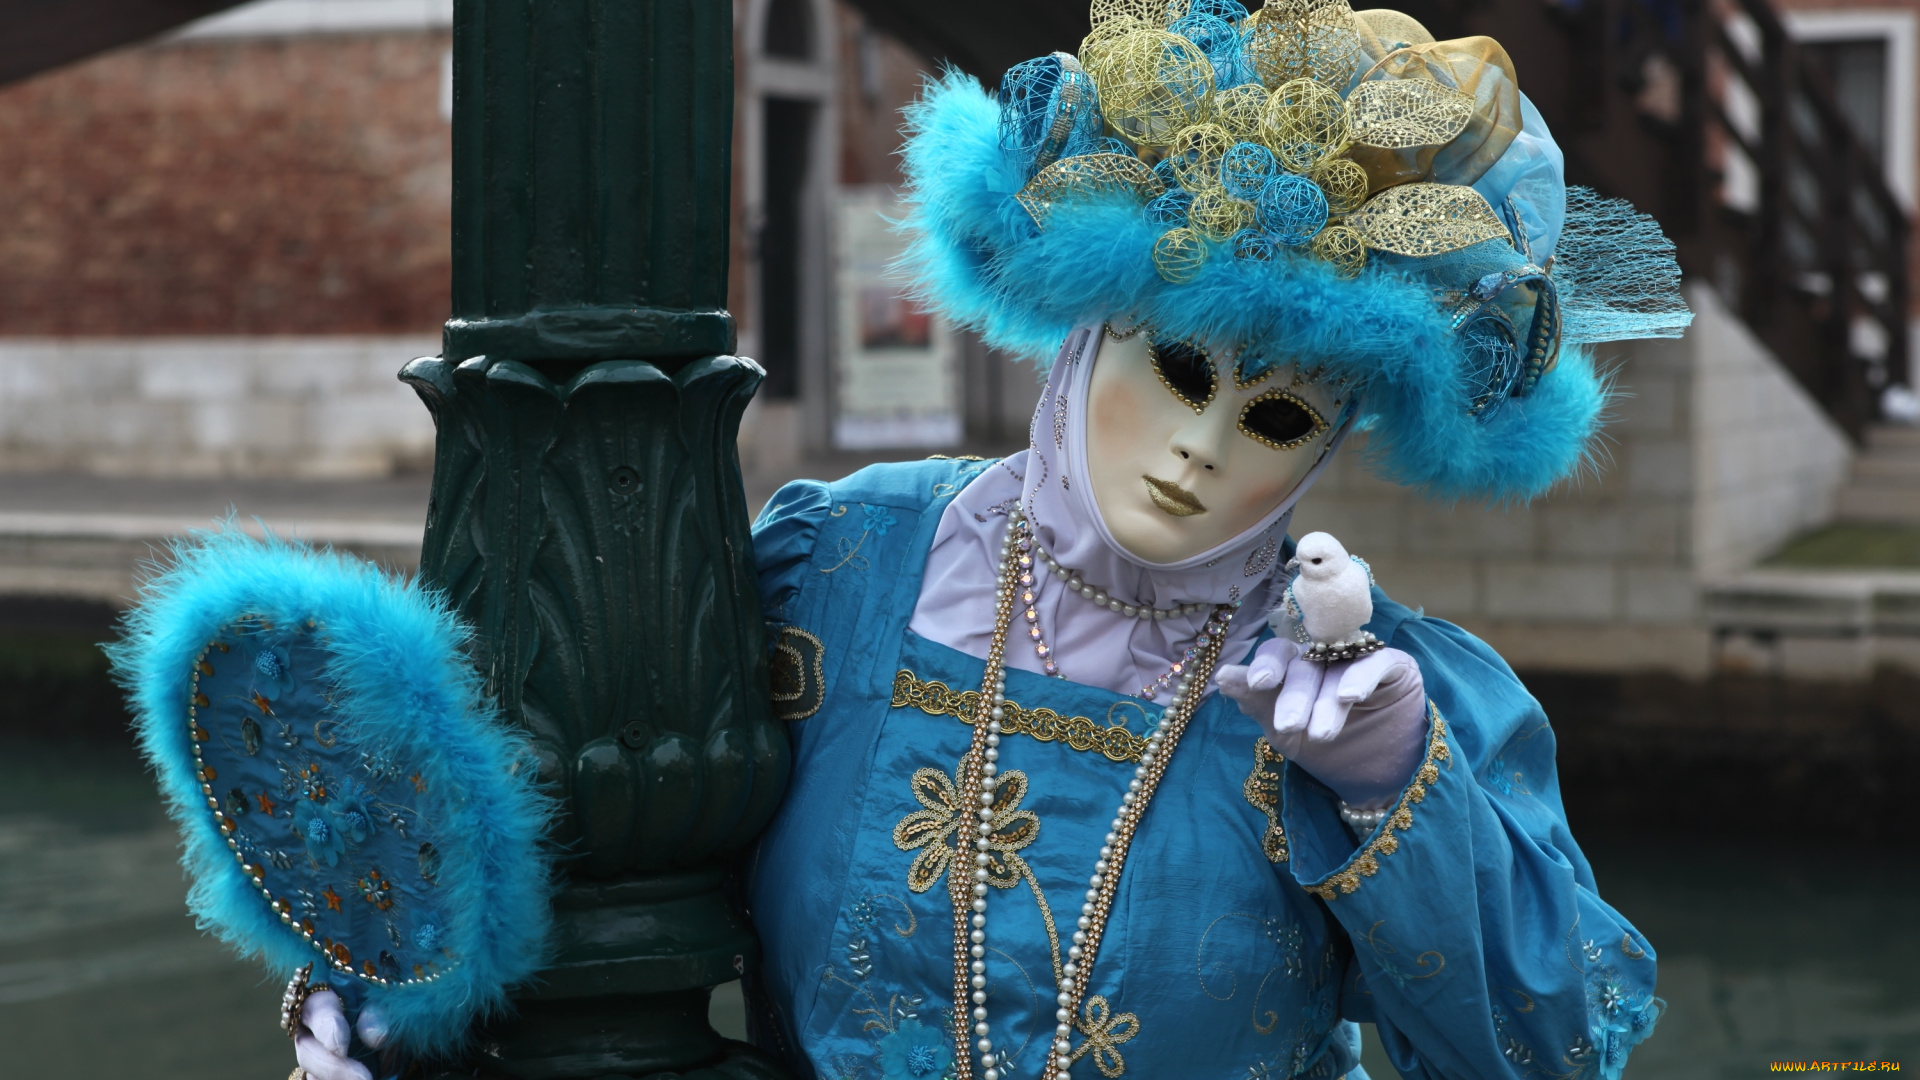 разное, маски, , карнавальные, костюмы, костюм, дама, карнавал, наряд, венеция, маска